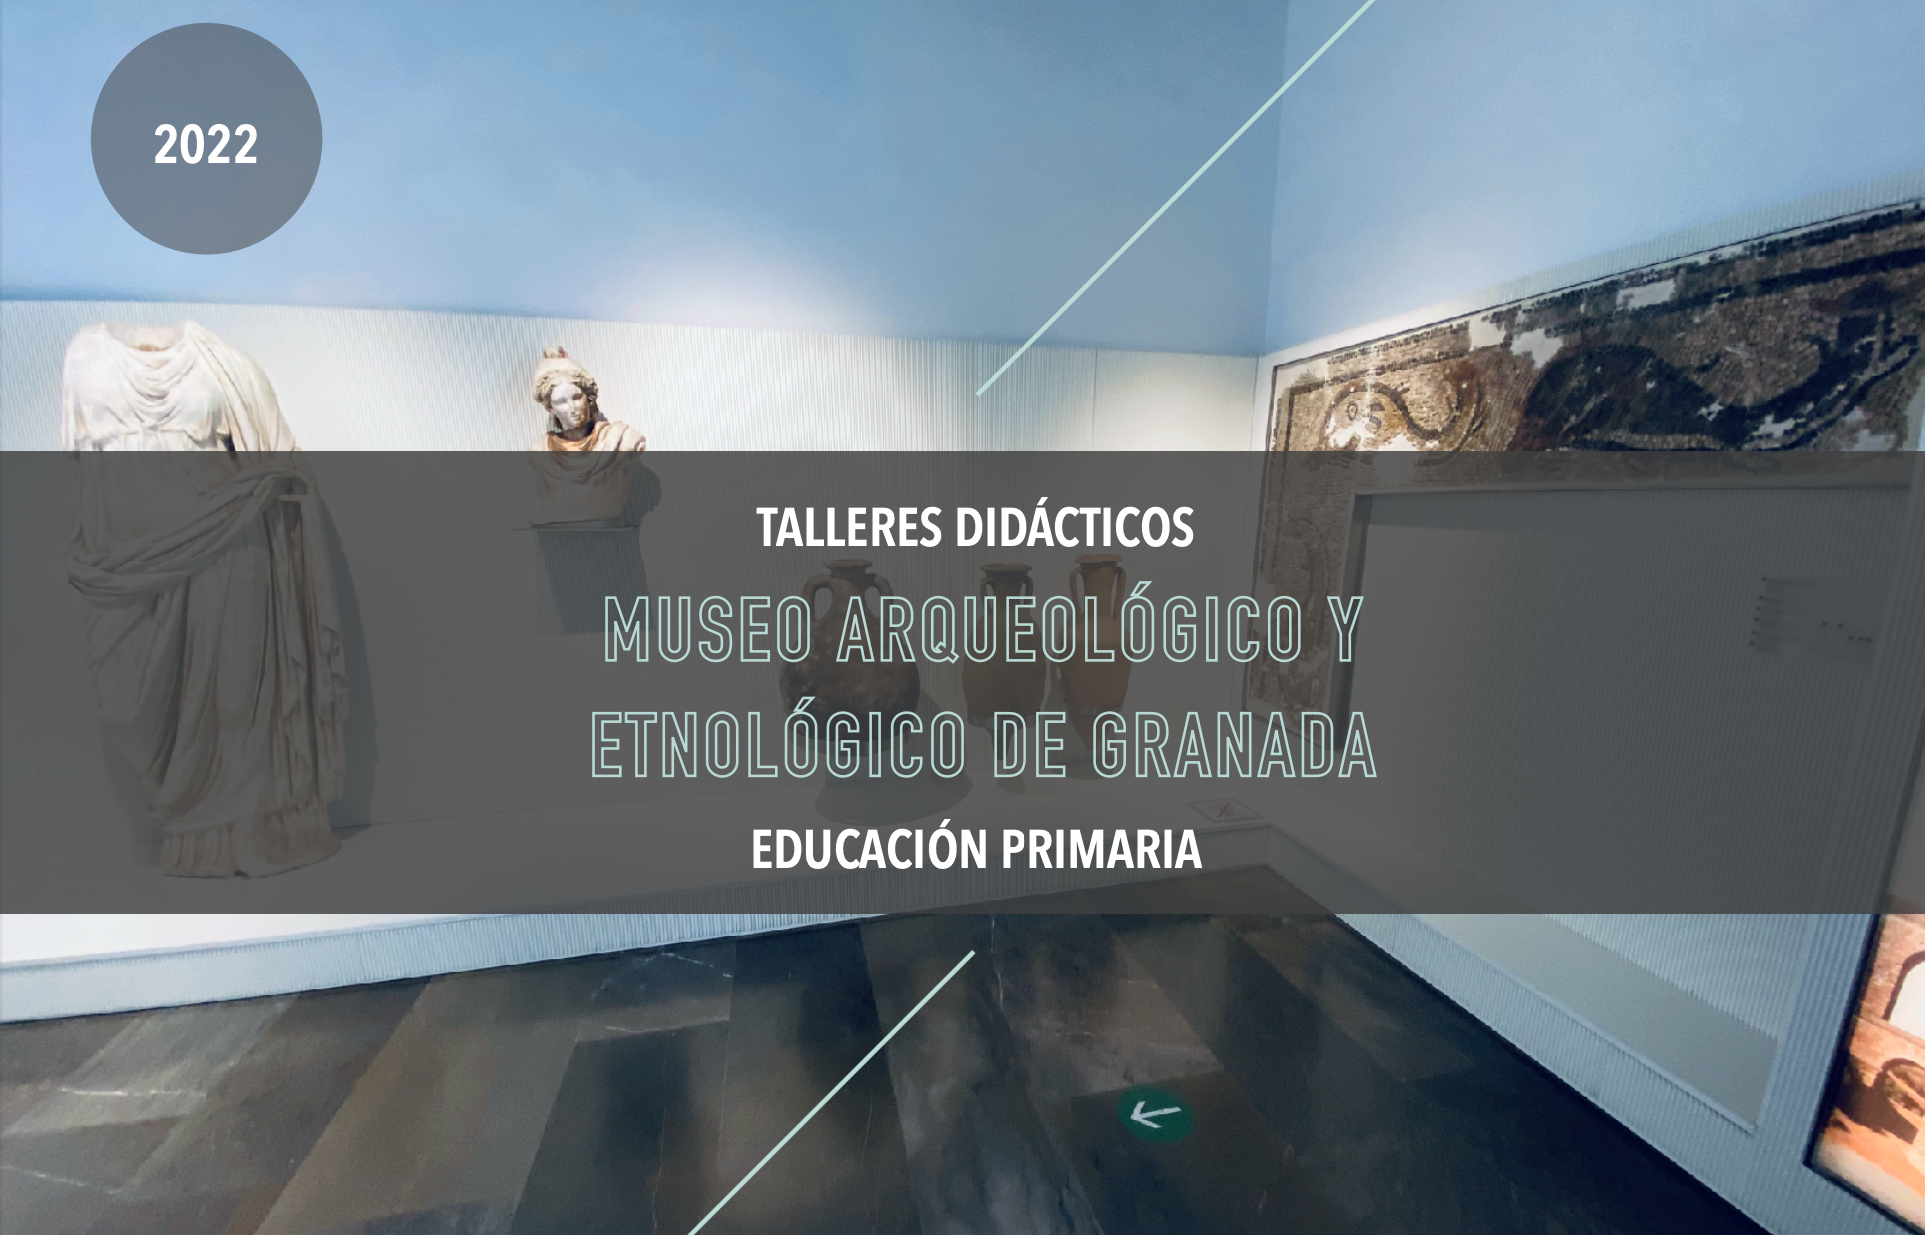 Programación de talleres didácticos para el curso 2022-2023 en el Museo Arqueológico y Etnológico de Granada dirigidos al público escolar